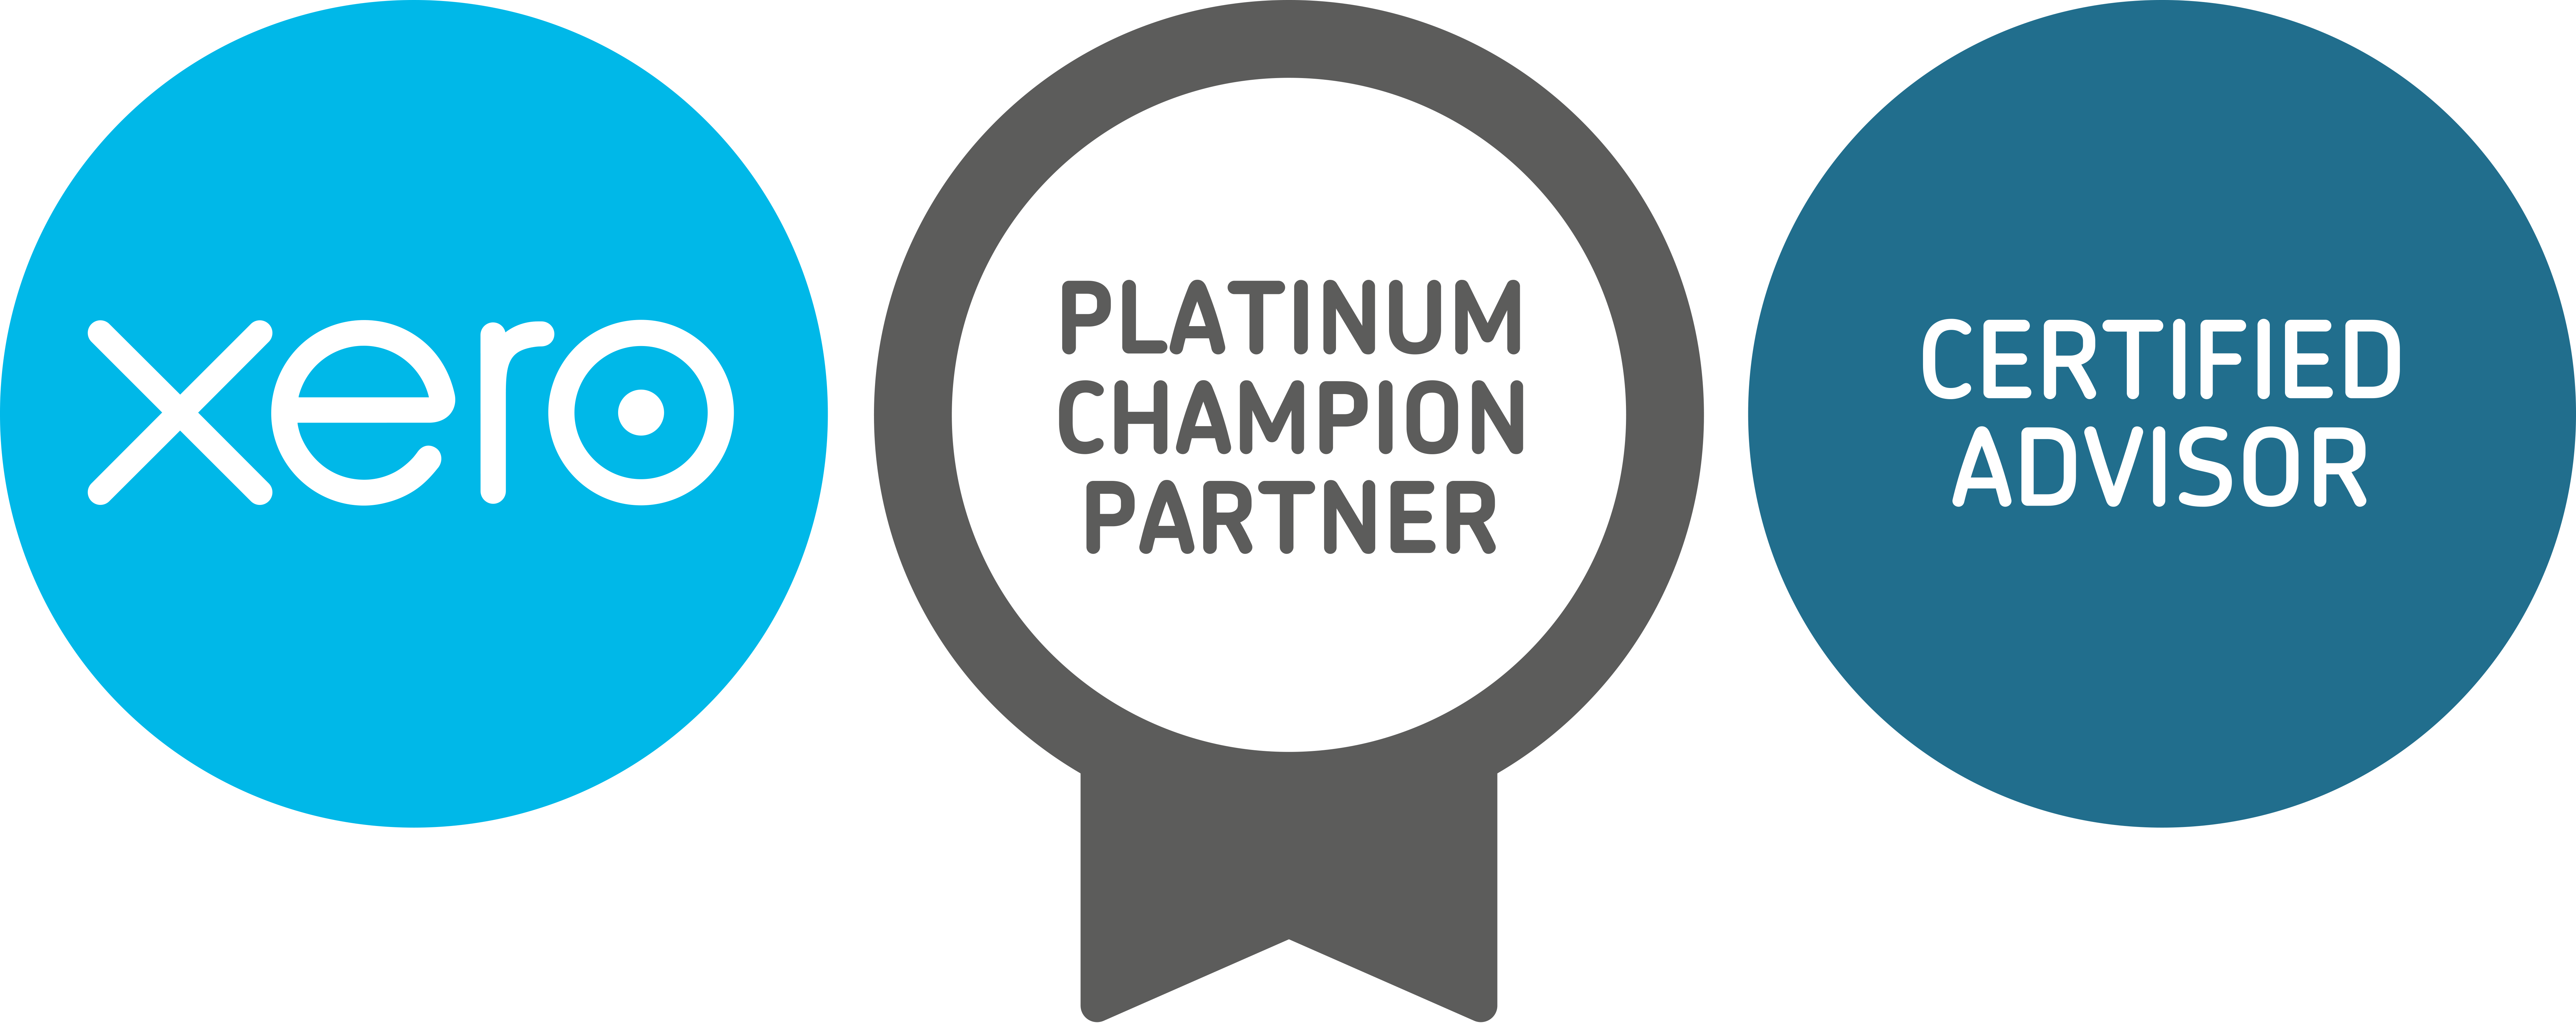 xero platinum champion partner cert advisor badges CMYK 1